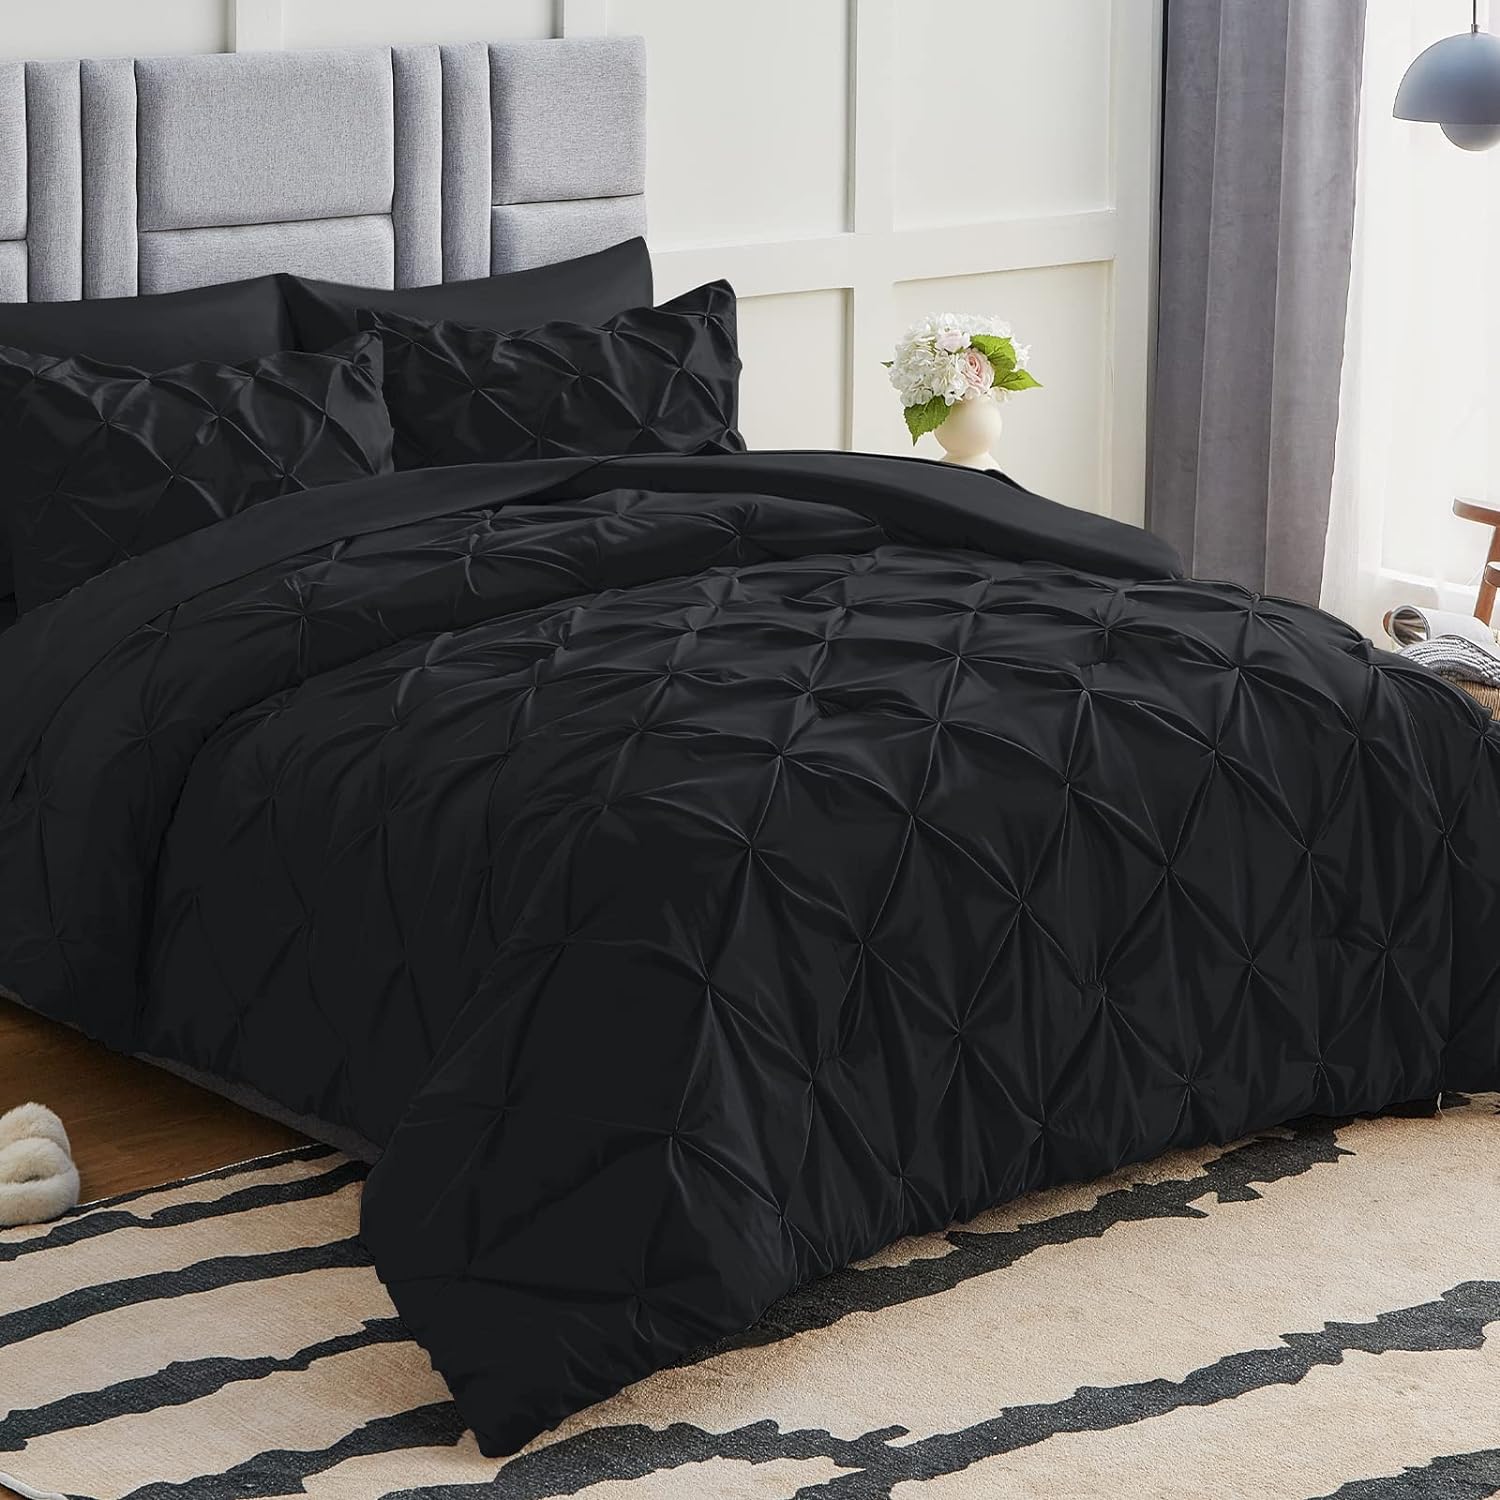 CozyLux Queen Comforter Set - 7 Pieces Comforters Queen Size Black, Pintuck  Bed